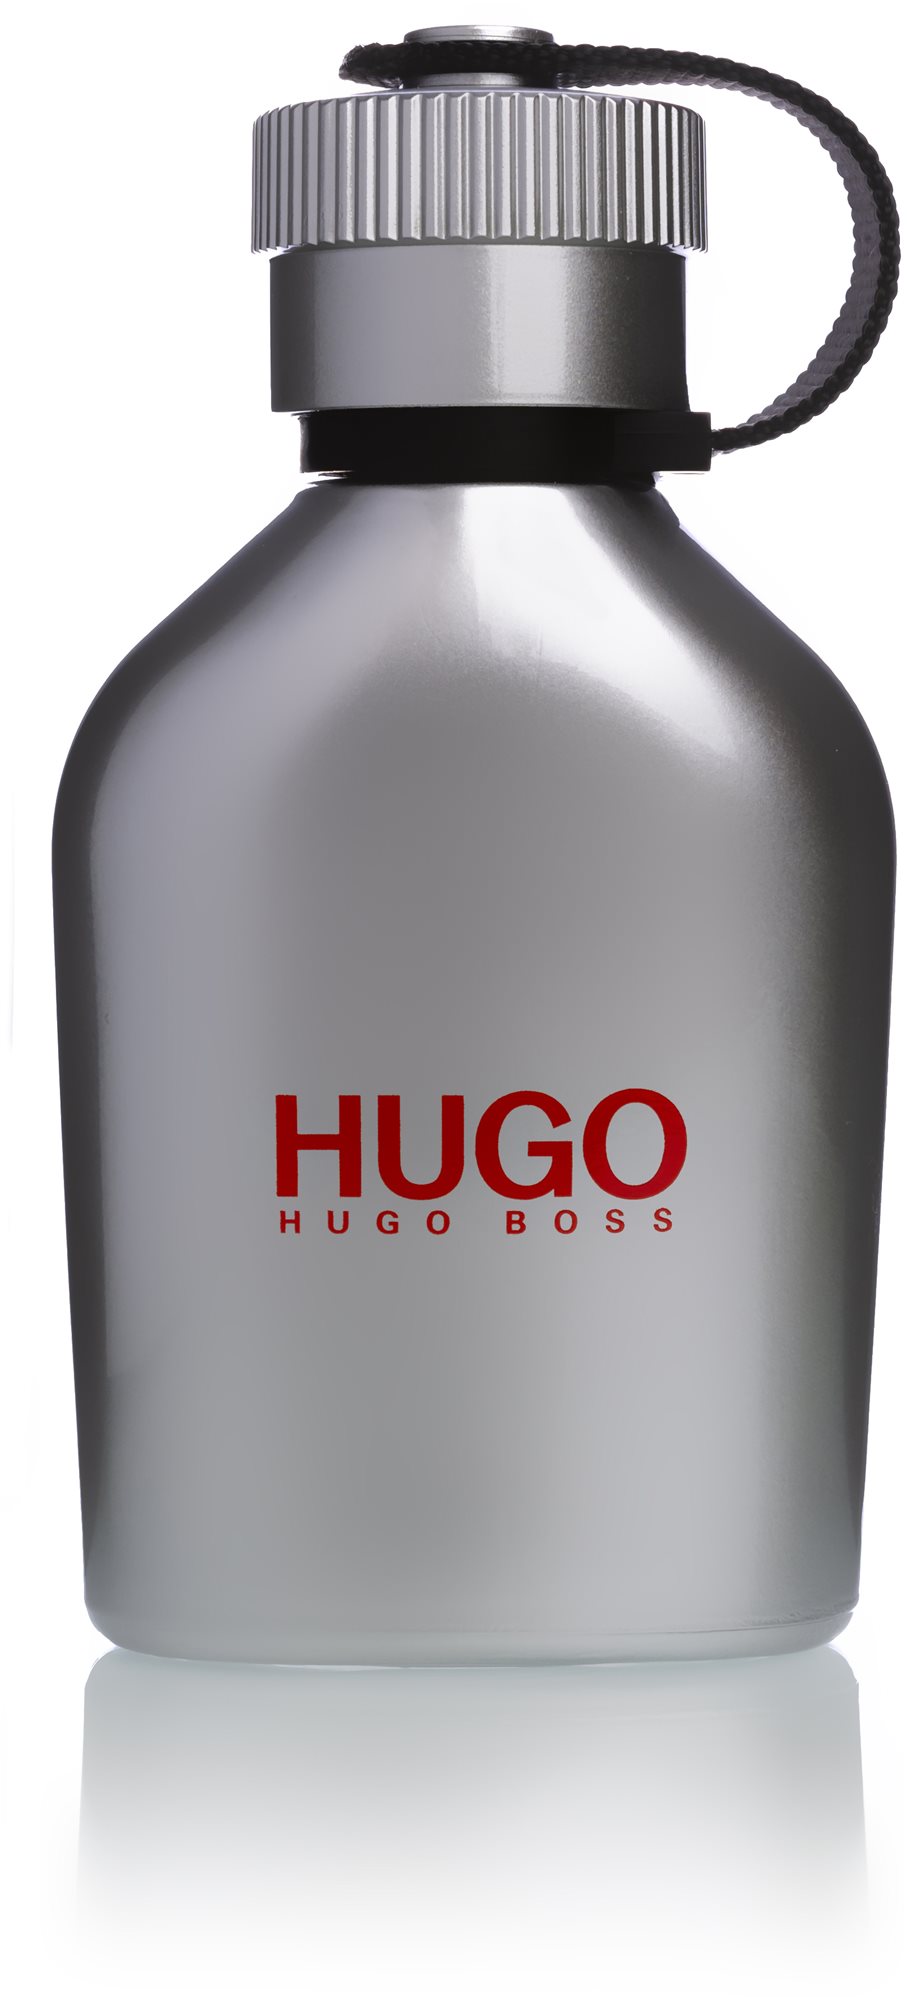 HUGO BOSS Hugo Iced EdT